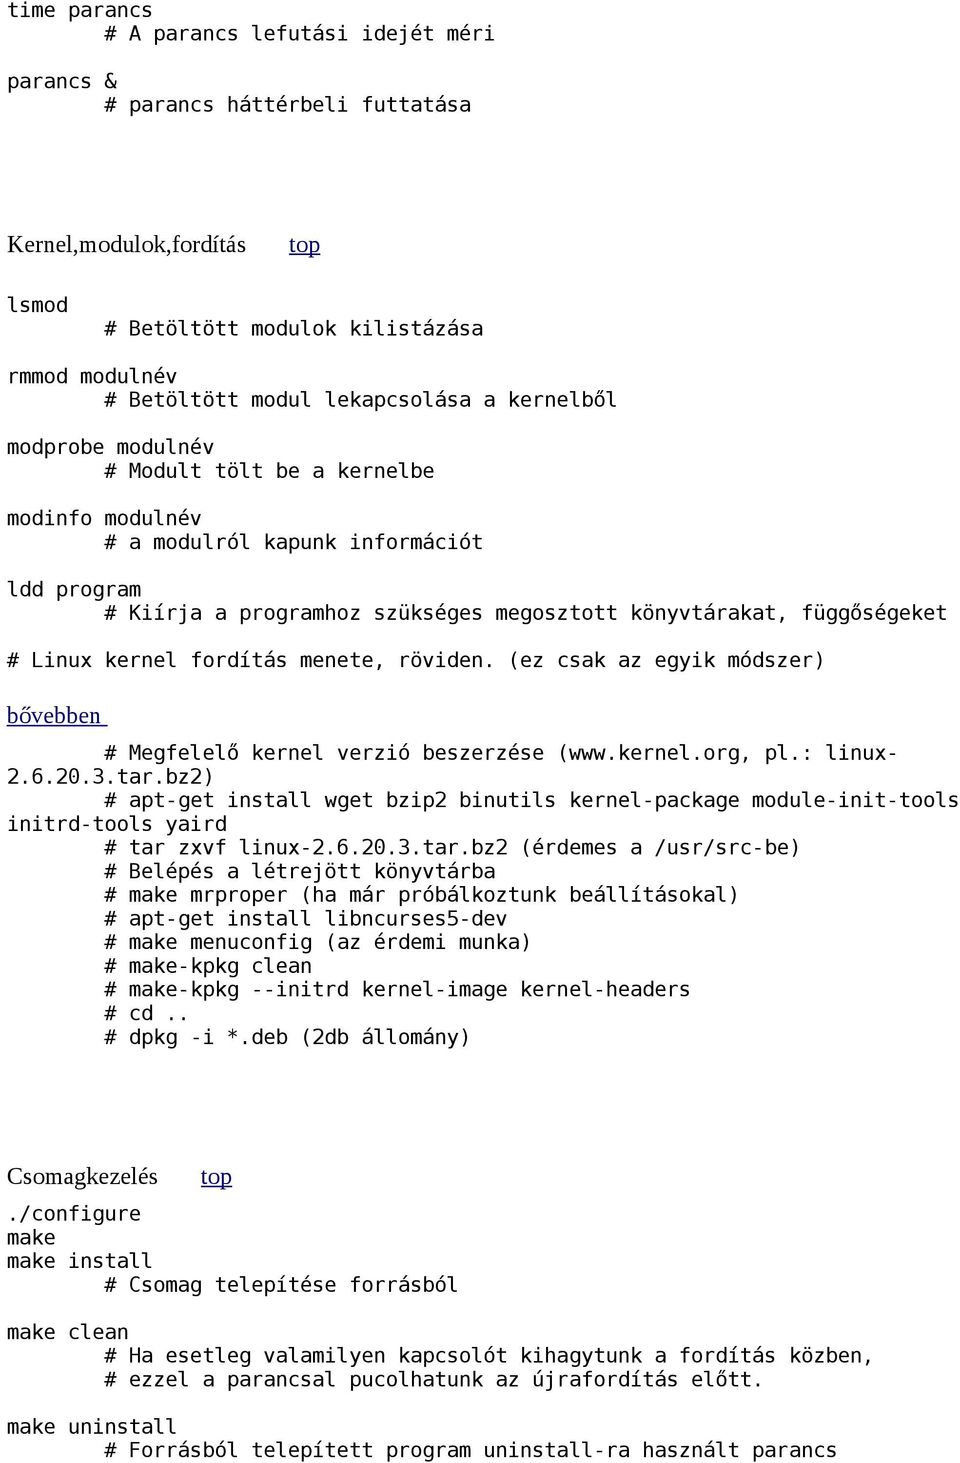 fordítás menete, röviden. (ez csak az egyik módszer) bővebben Megfelelő kernel verzió beszerzése (www.kernel.org, pl.: linux- 2.6.20.3.tar.